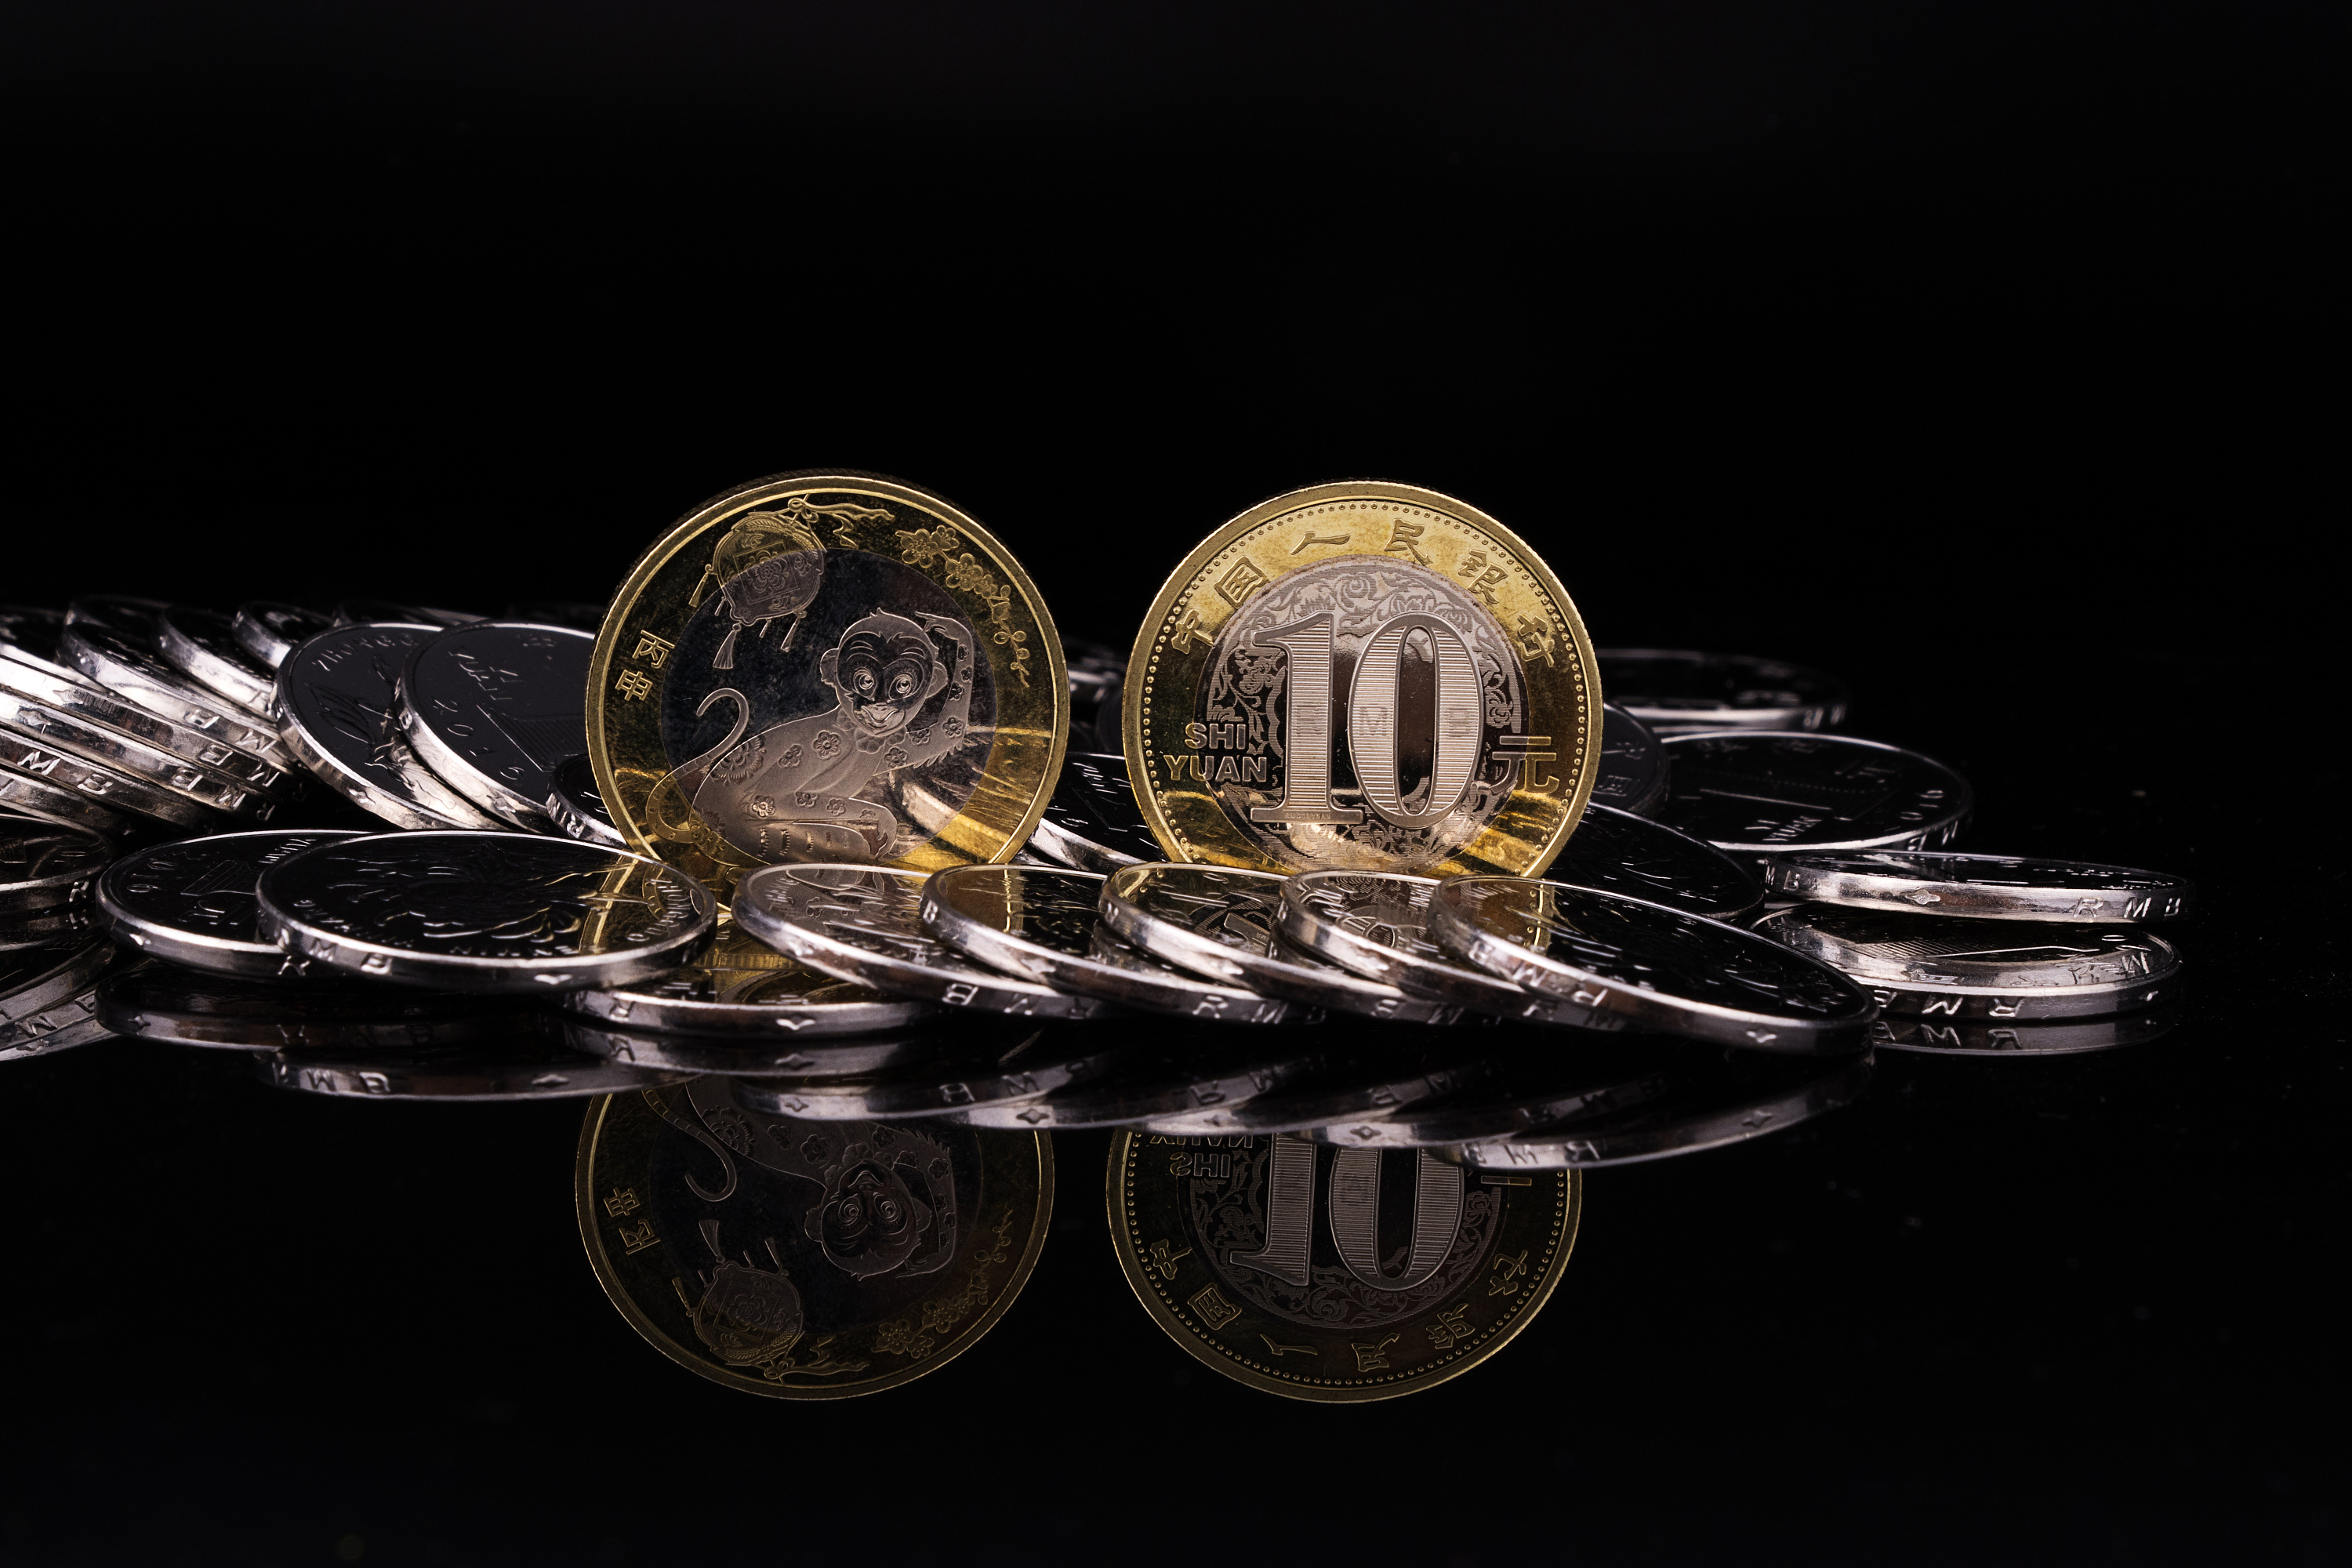 堆挪威硬币 库存照片. 图片 包括有 硬币, 挪威, 财务, 背包, 替换, 货币, 空白, 财富, 储蓄 - 52728478